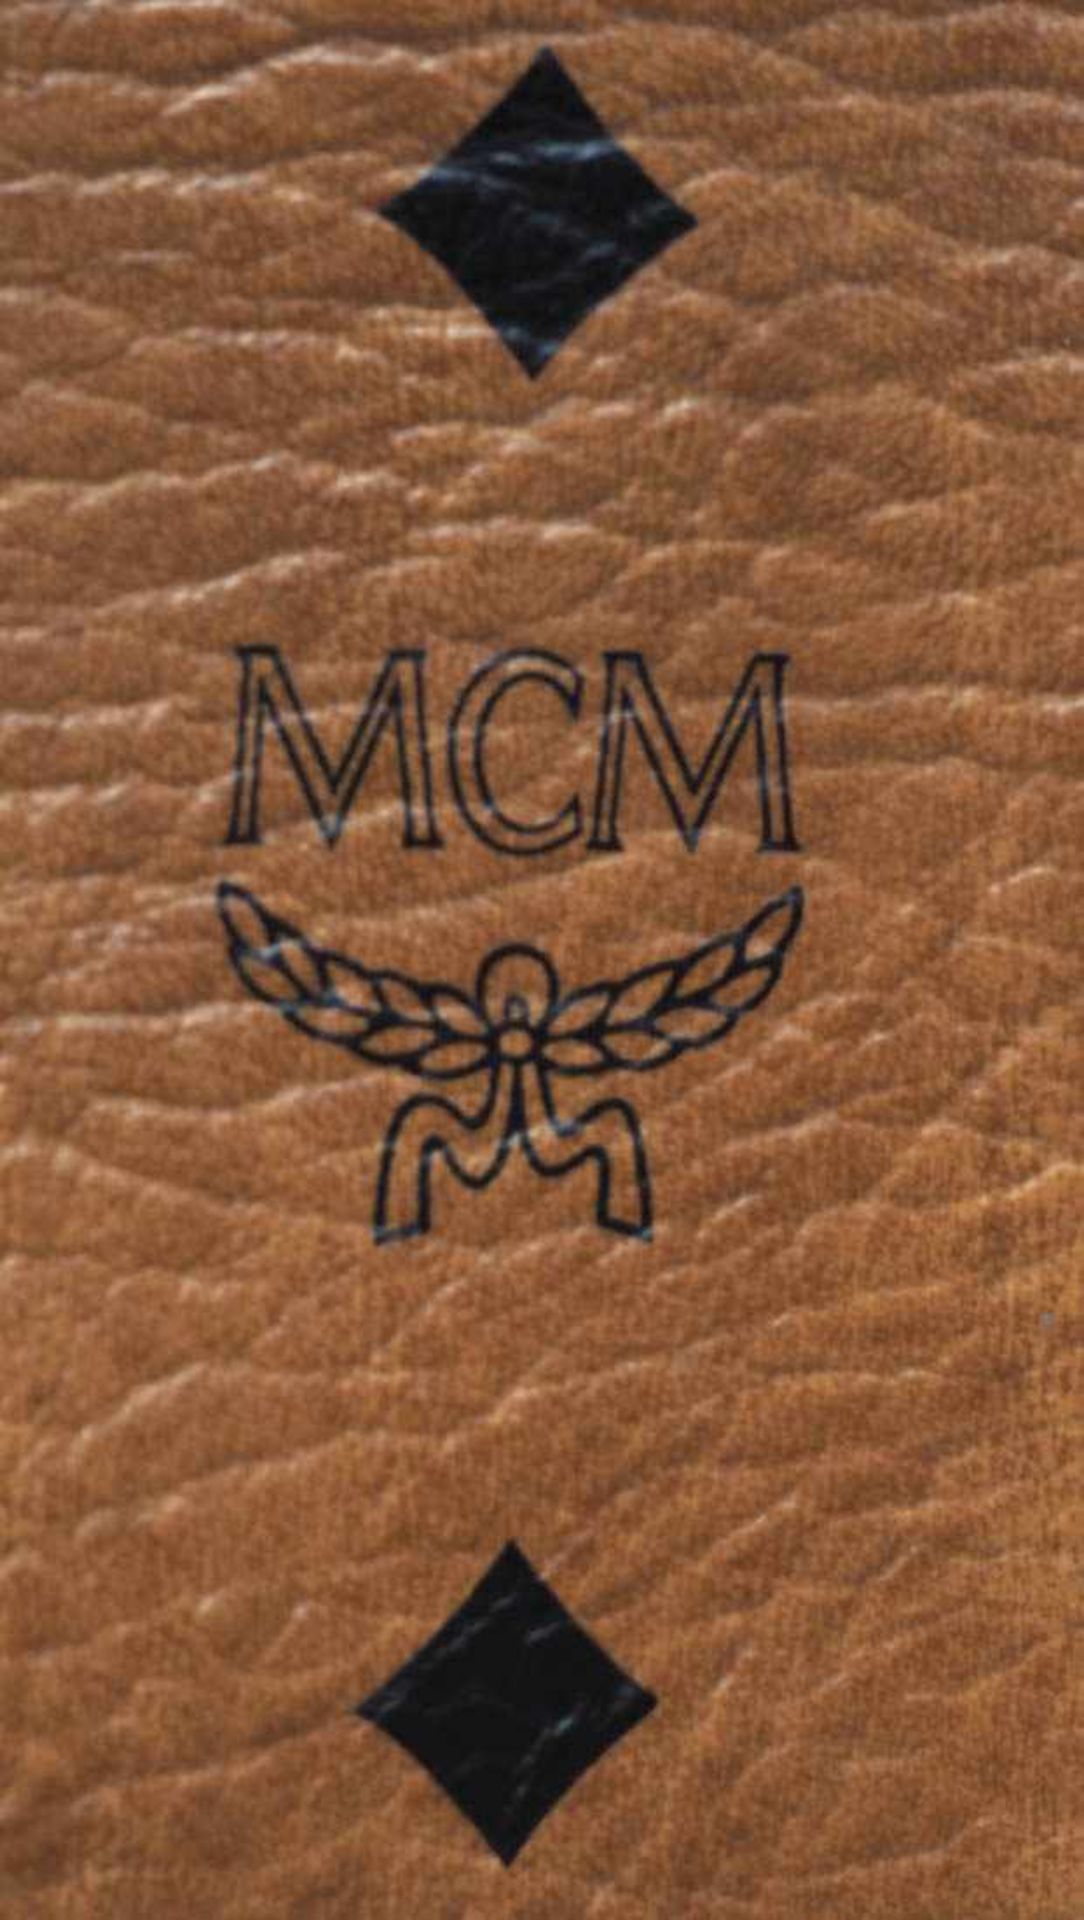 Handtasche, MCM Helles Leder, Beschläge aus vergoldetem Metall. Numeriert 17120. 25x31cm. Mit - Bild 3 aus 8